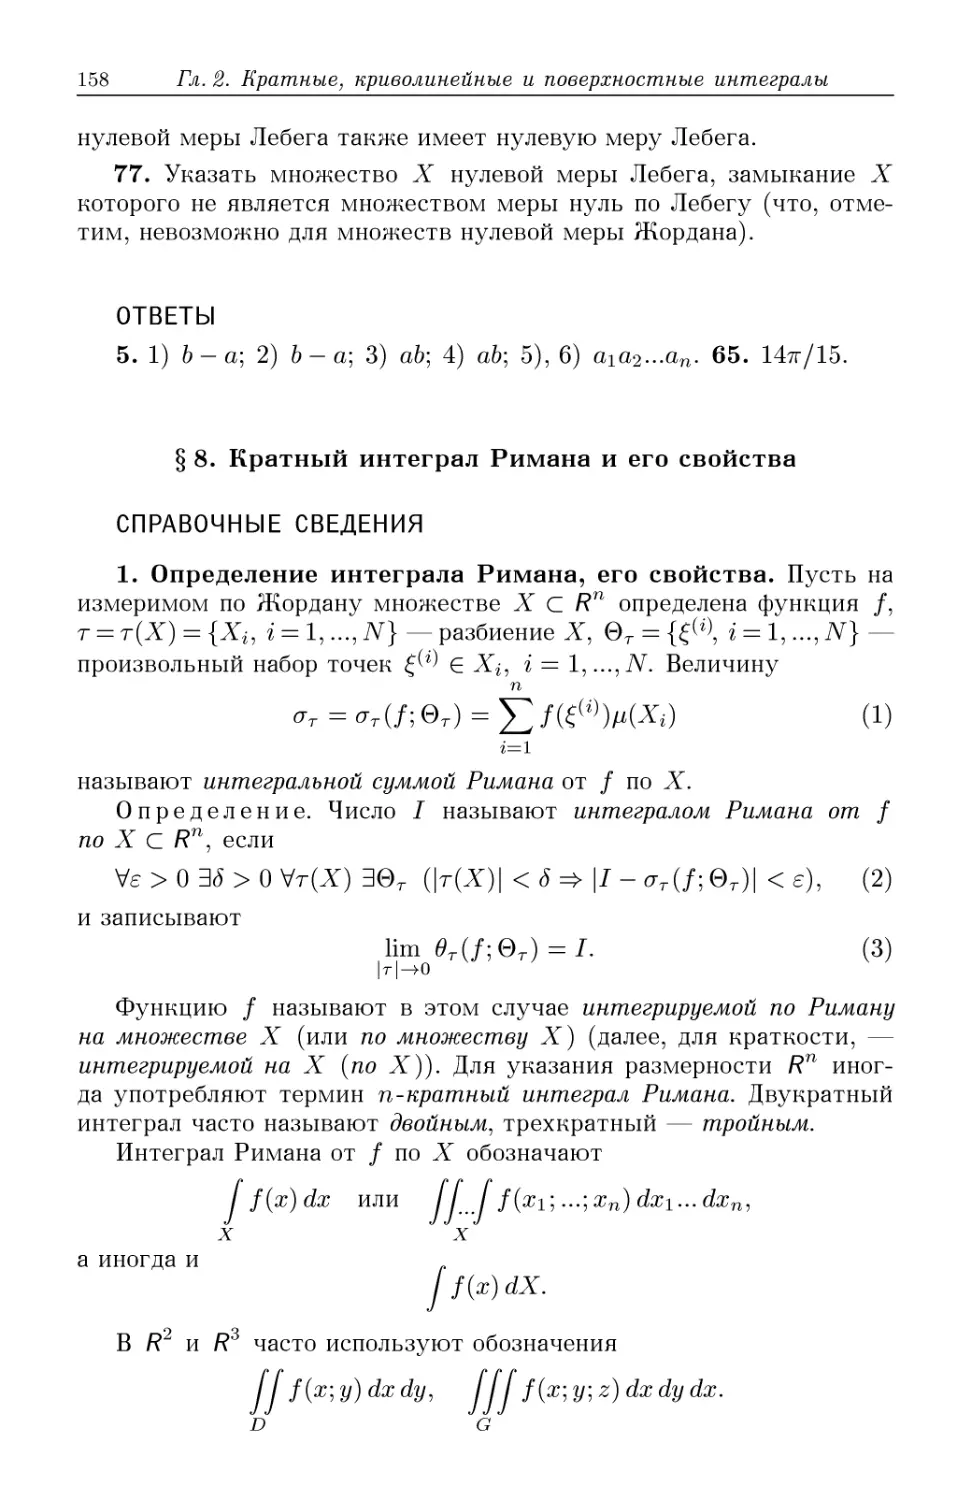 §8. Кратный интеграл Римана и его свойства